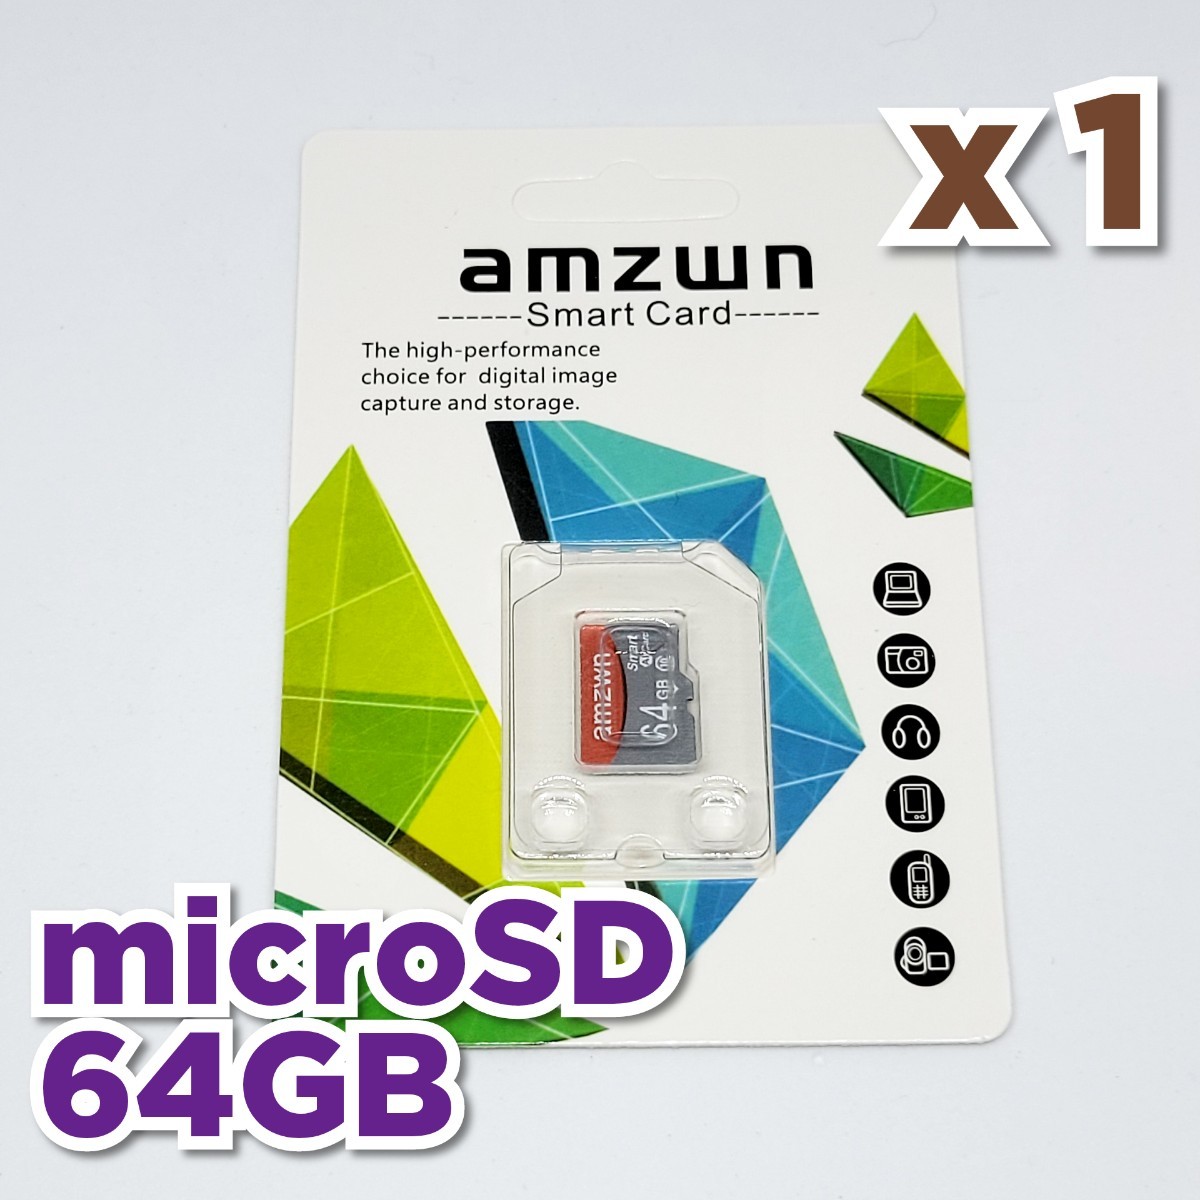 【送料無料】マイクロSDカード 64GB 1枚 class10 UHS-I 1個 microSD microSDXC マイクロSD AMZWN 64GB RED-GRAY_画像1